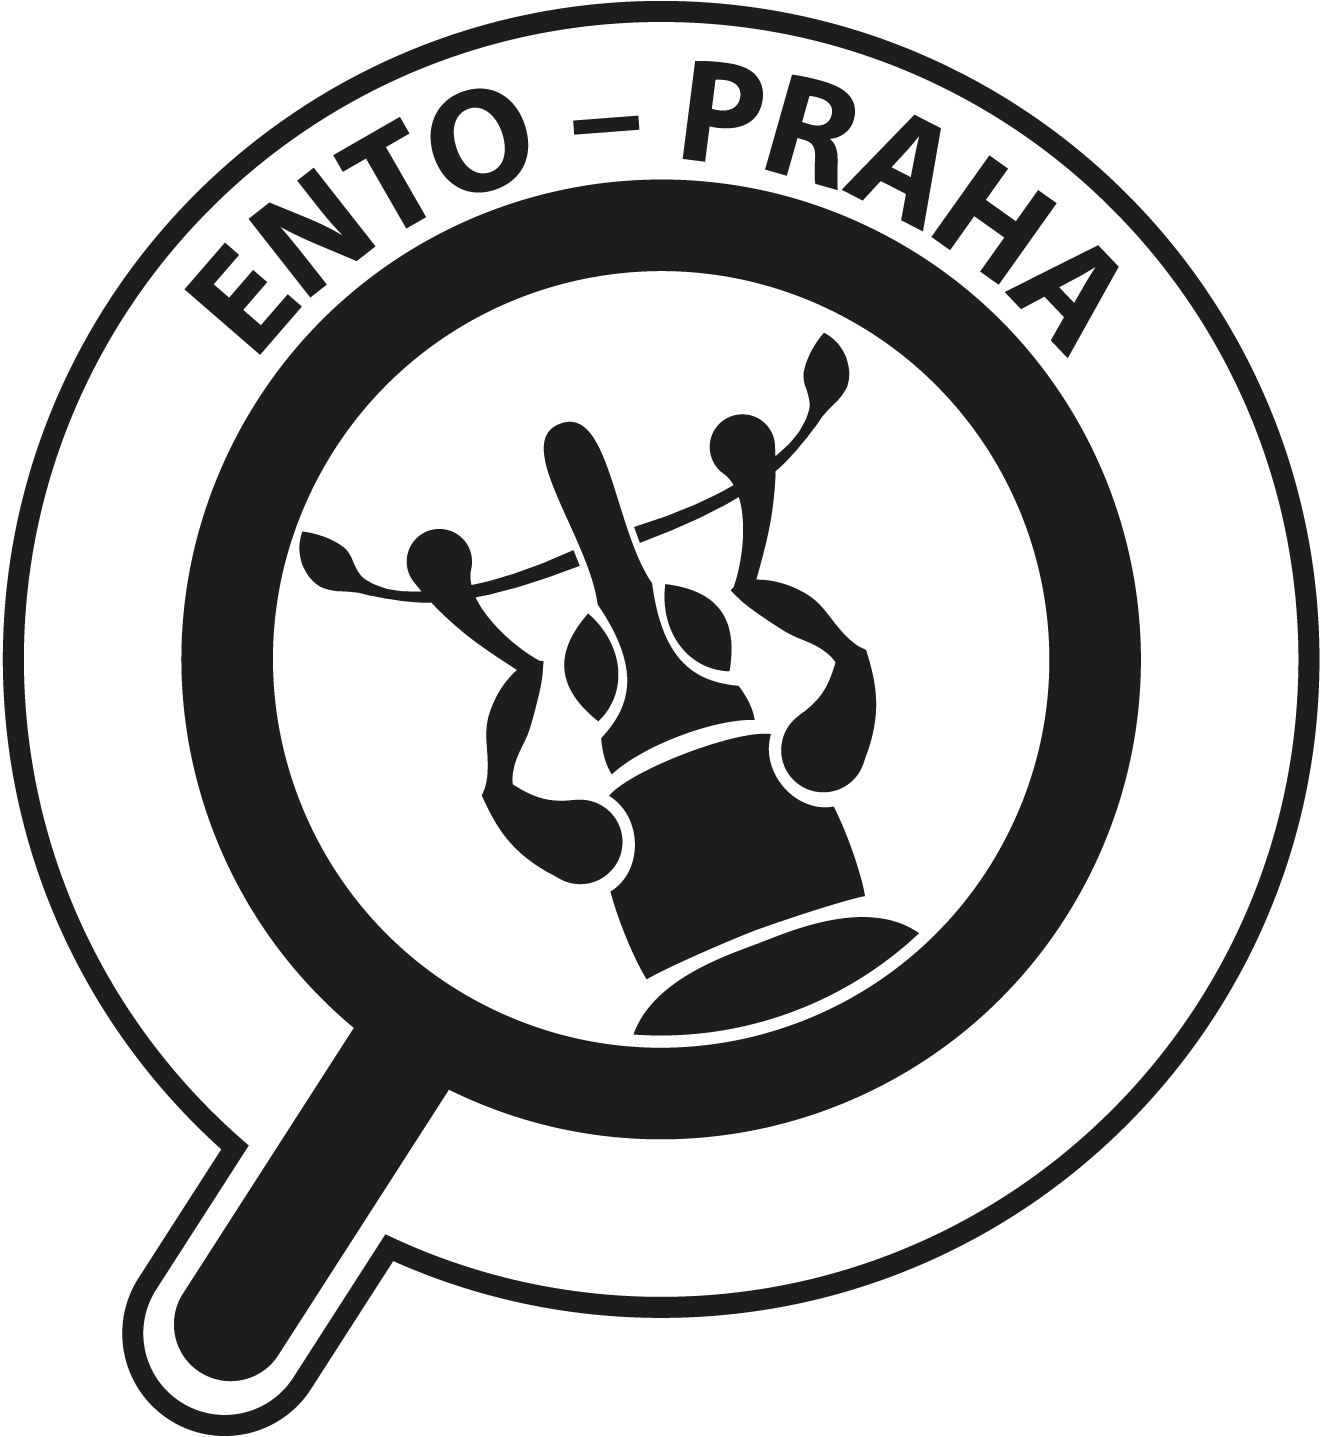 logo-paticka.png